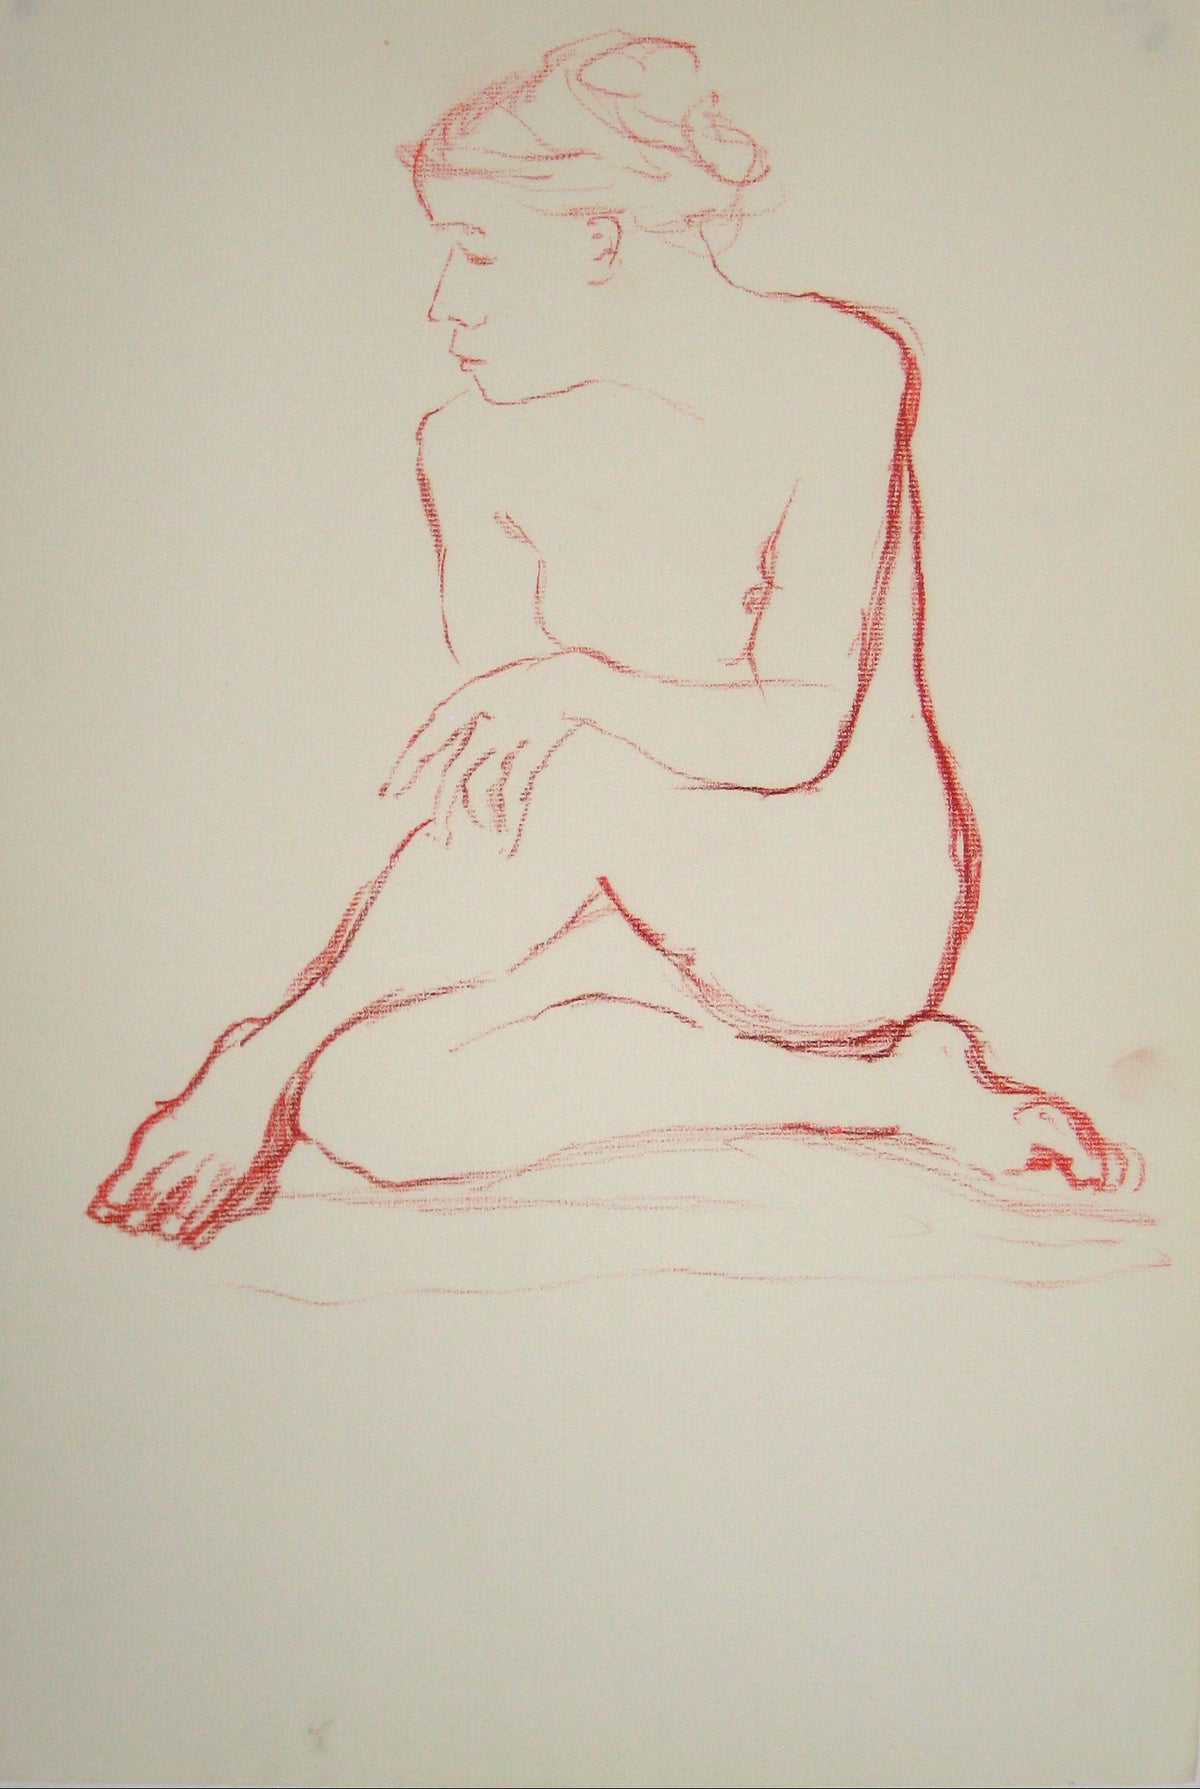 Nude in Contemplation&lt;br&gt;Oil Pastel, 1950-60s&lt;br&gt;&lt;br&gt;#15143